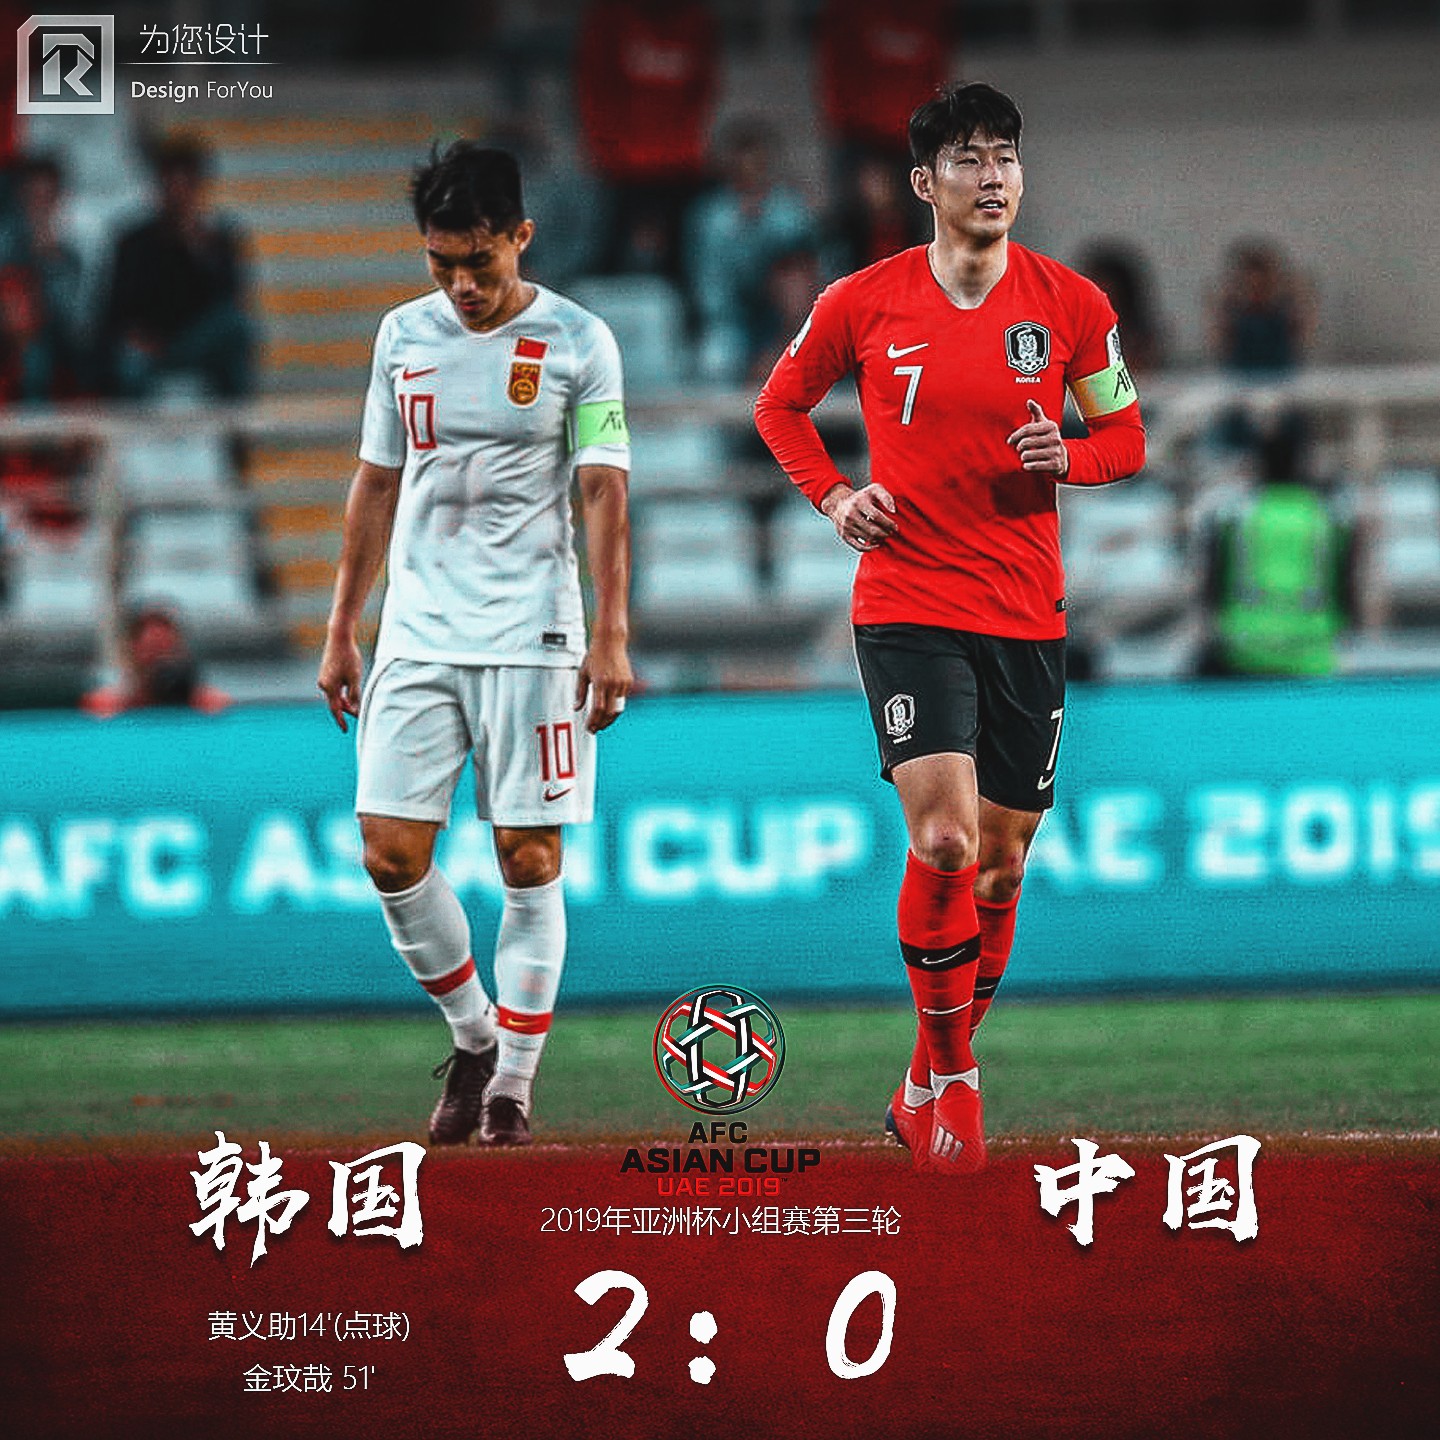 中国足球 | 中国队亚洲杯海报合集